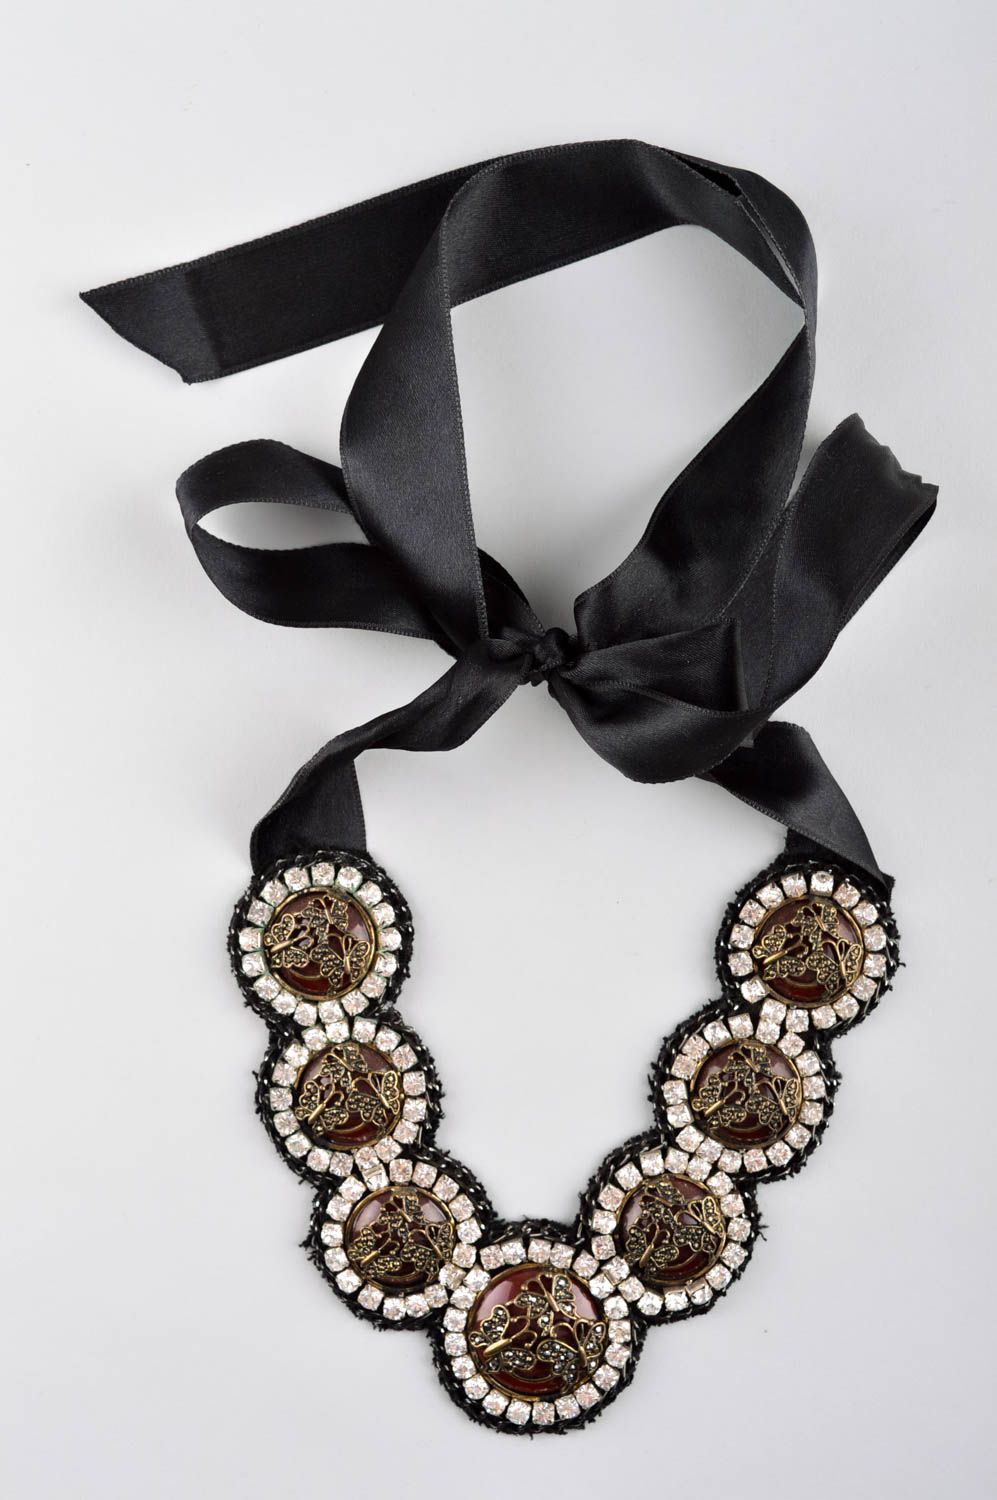 Collier design en tissu Bijou fait main strass noir Accessoire pour femme photo 2